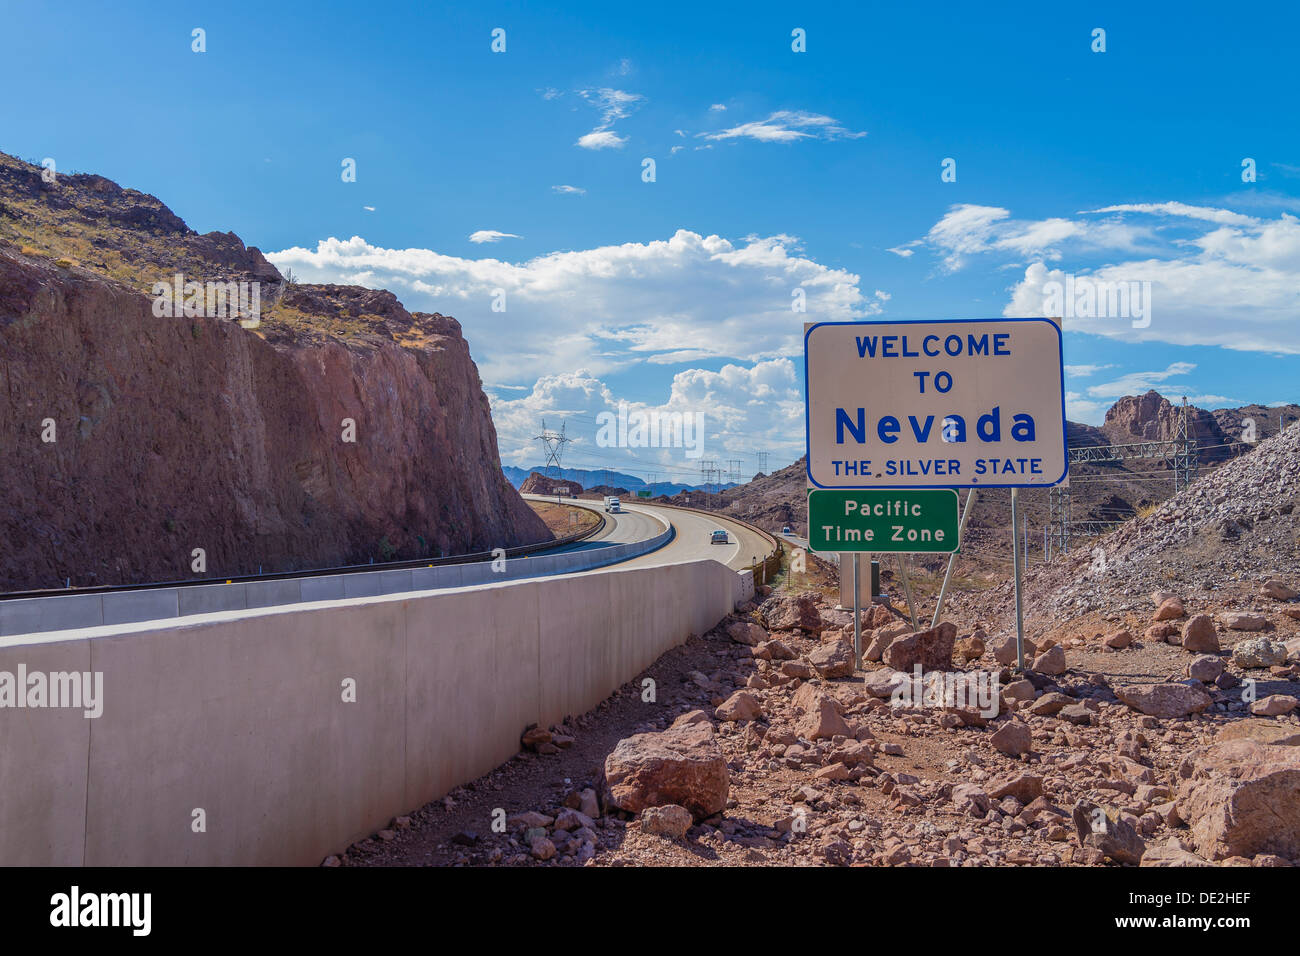 Herzlich Willkommen Sie in Nevada auf der Arizona und Nevada State Line durch den Hoover-Staudamm. Pacific Time Zone Zeichen ist darunter. Stockfoto